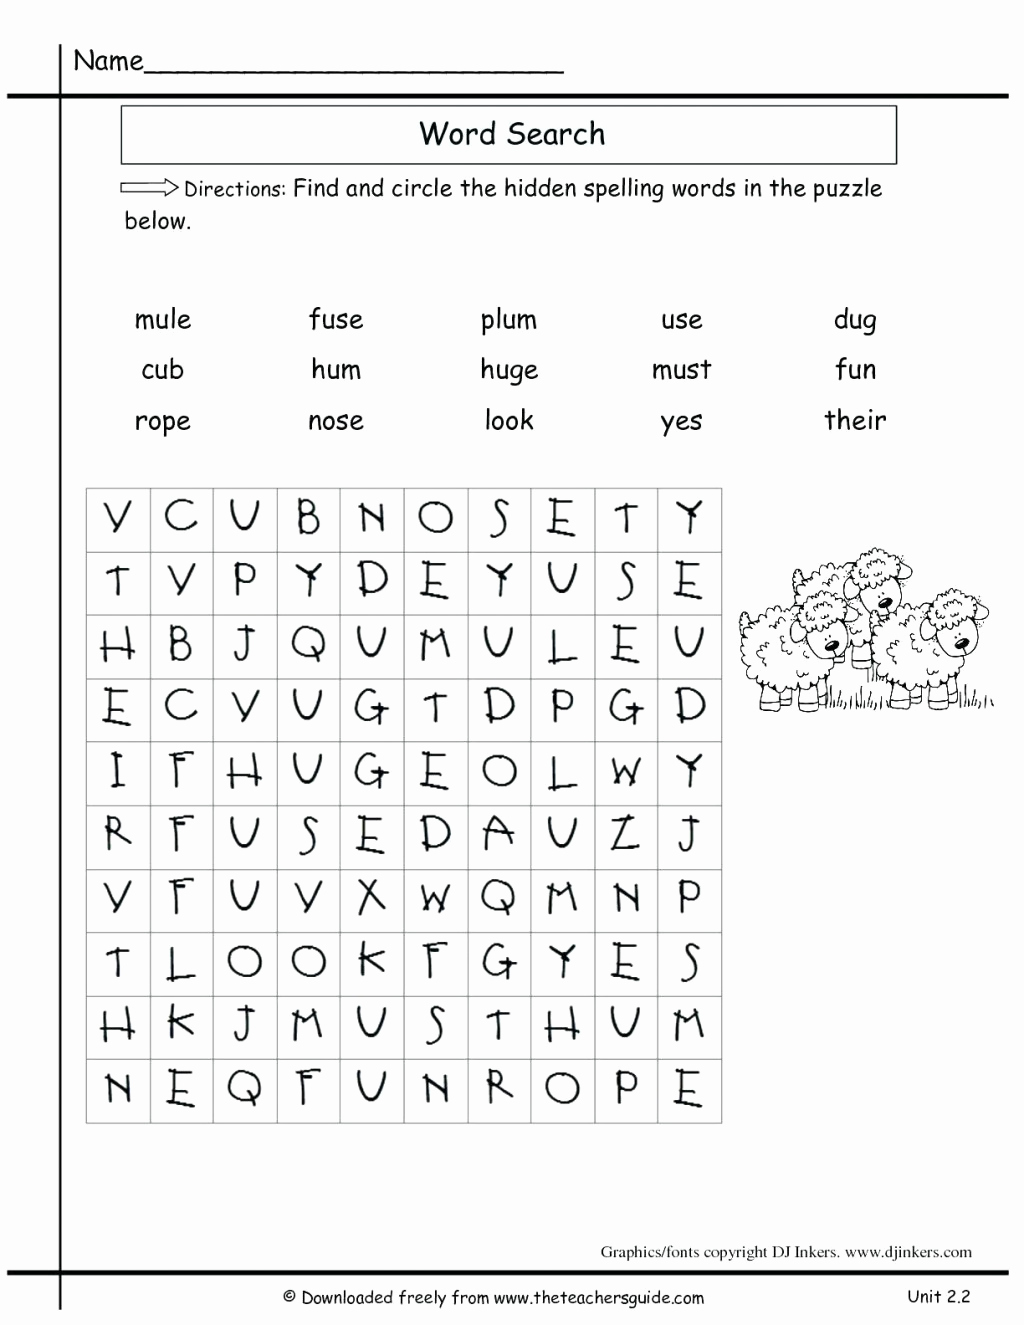 Spelling Worksheets 2nd Graders Unique 2nd Grade Spelling Worksheets for Printable 2nd Grade